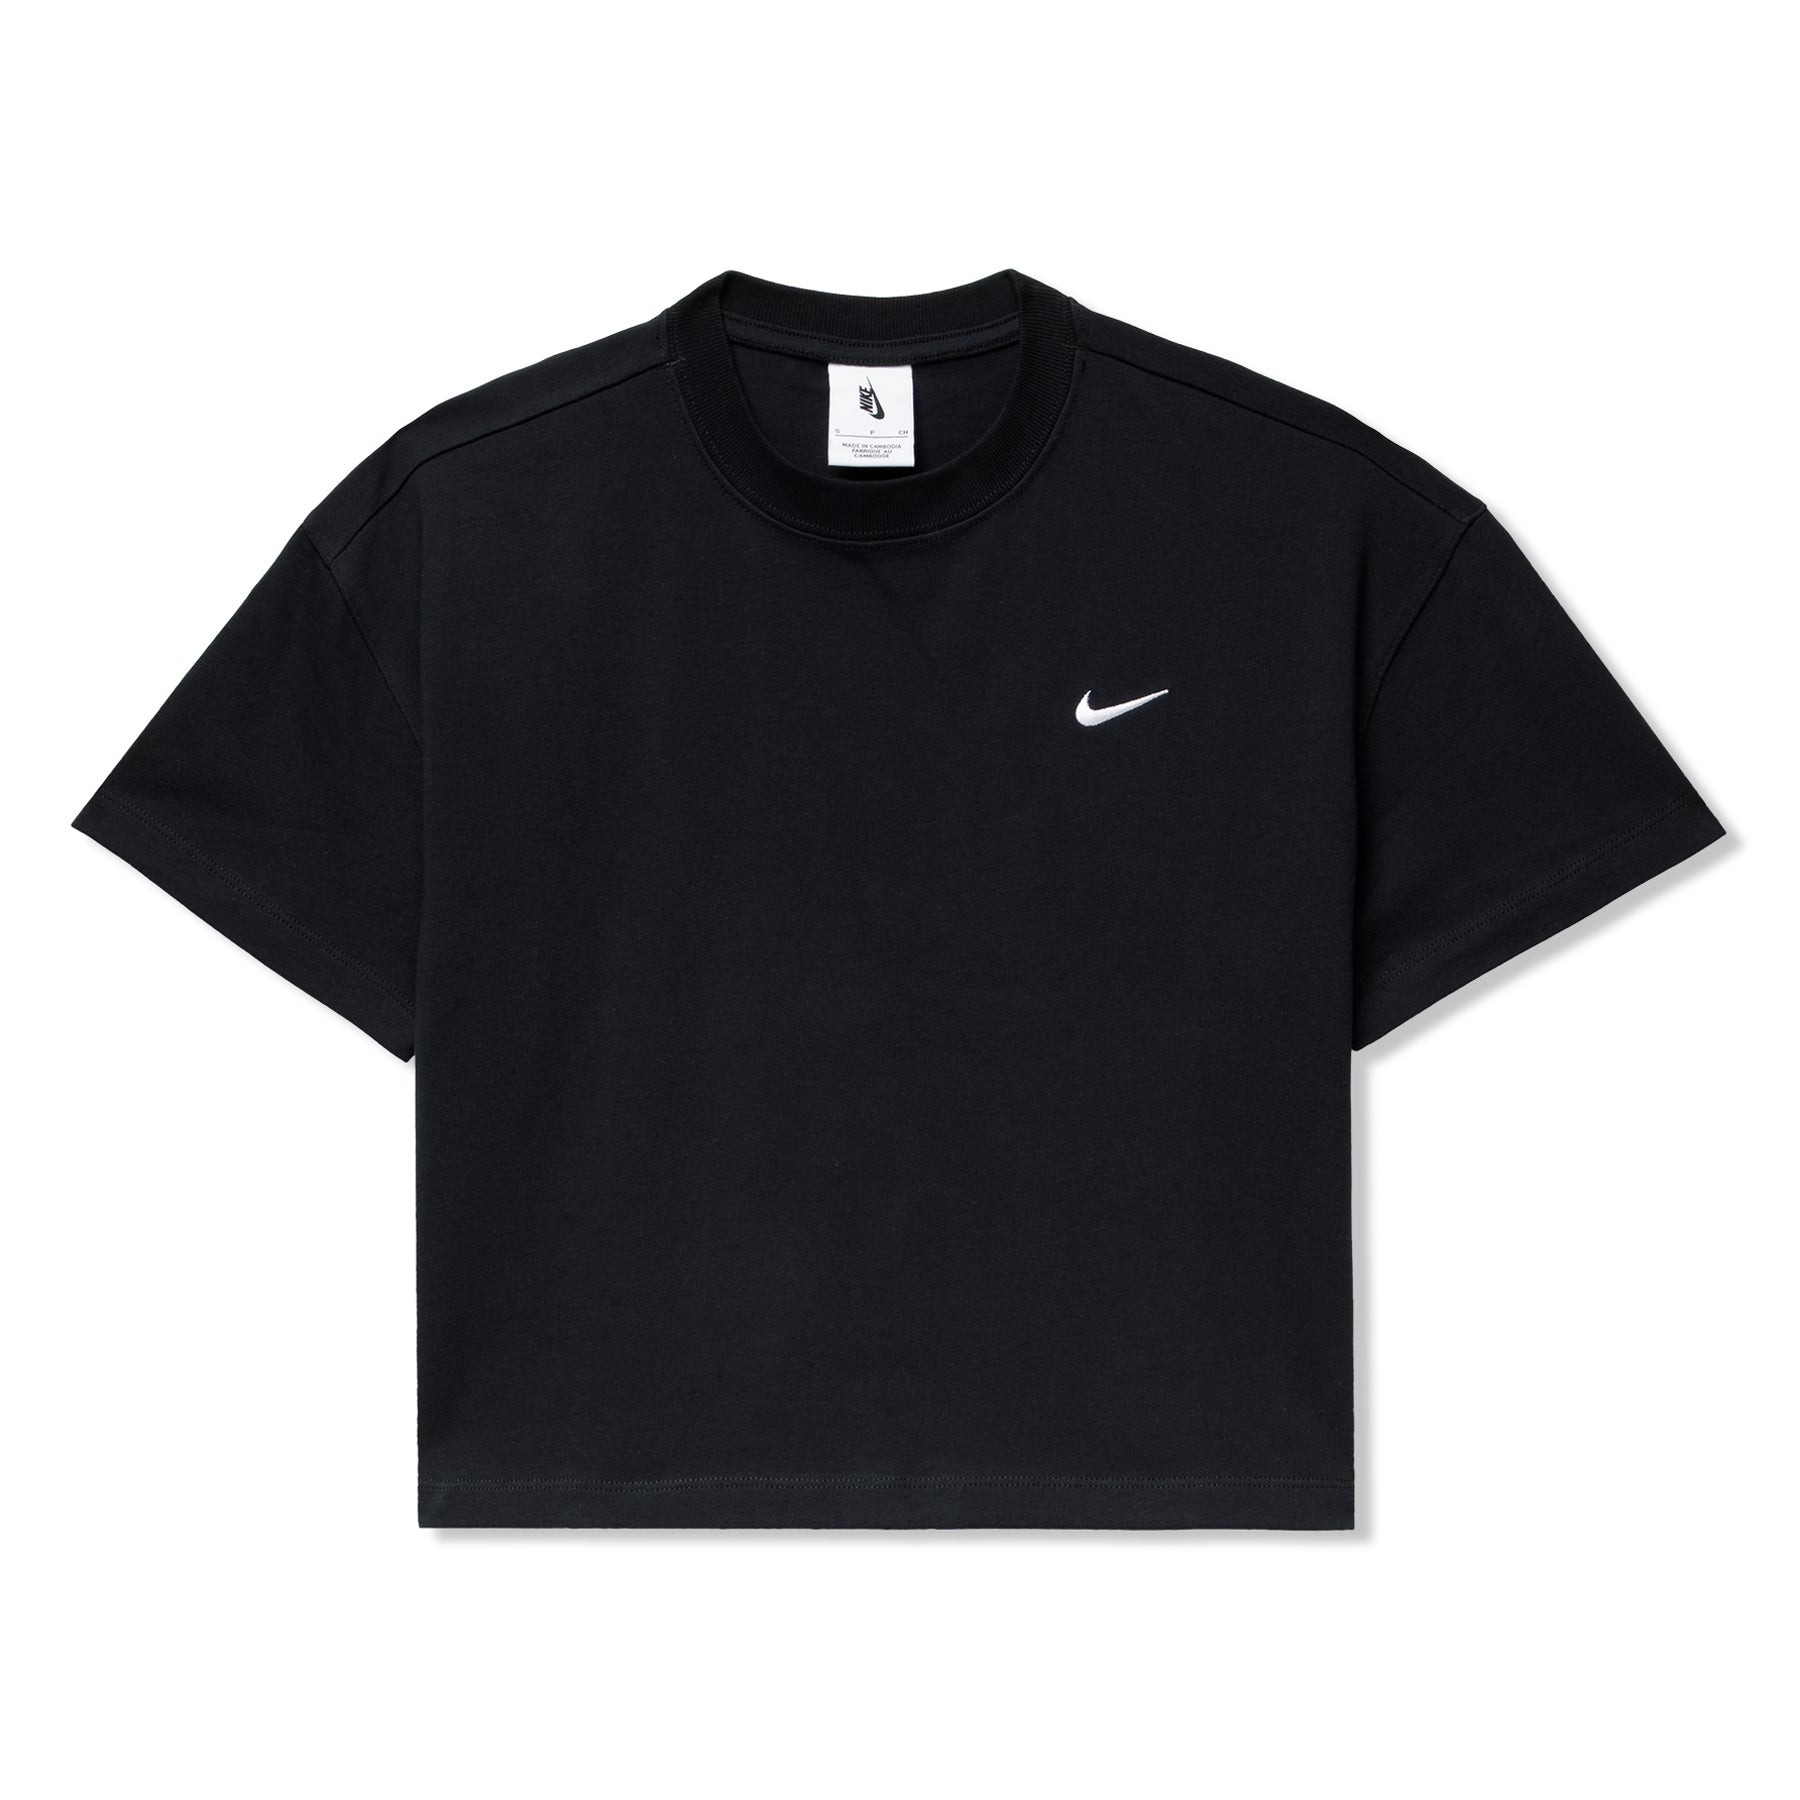 NikeLab Womens T-Shirt (Black/White) – CNCPTS